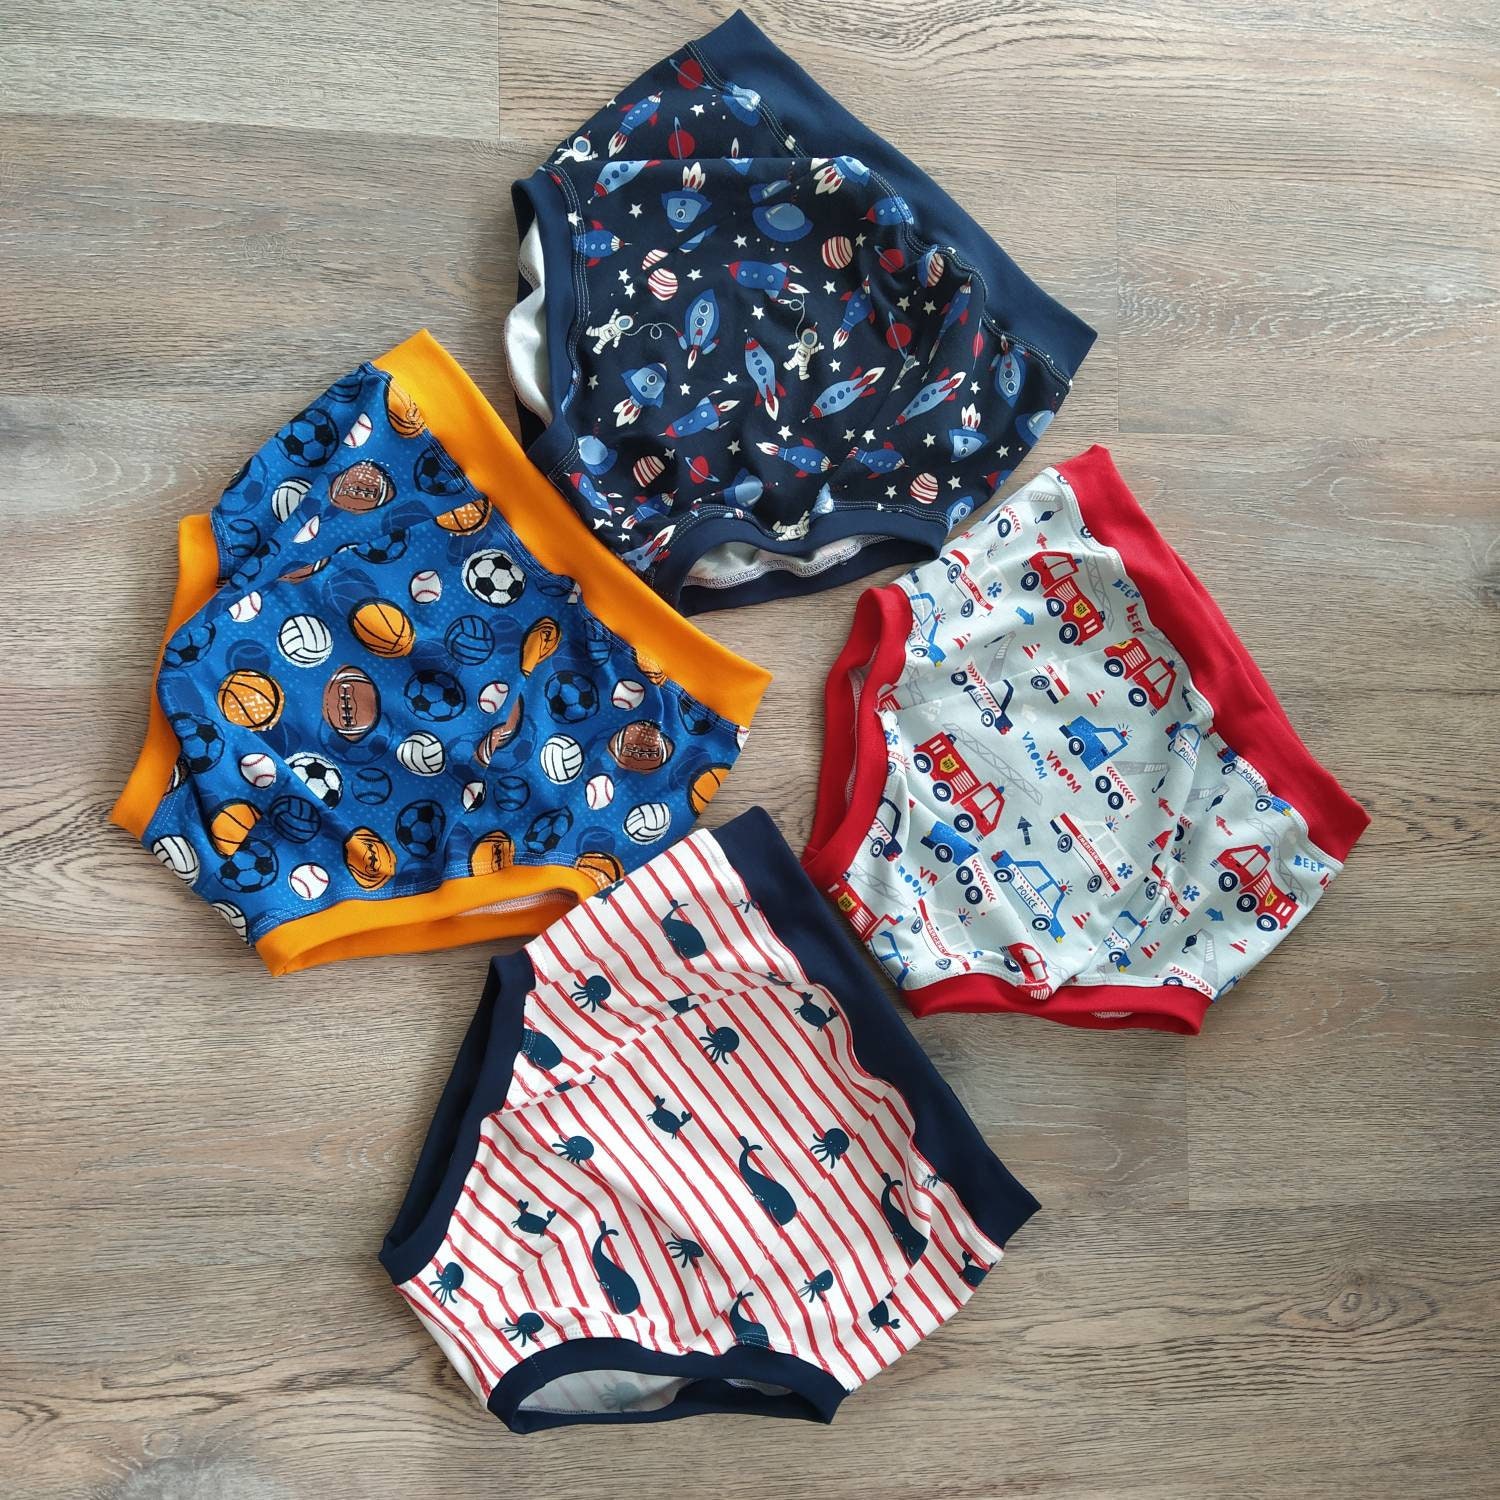 Esaierr Boys Dinosaur Boxer Briefs Underwear for Toddler Kids,Baby  Breathable Soft Cotton Briefs Dinosaur Training Boyshorts Little Boys  Underwear 3Pack for 3-8 Years Old 